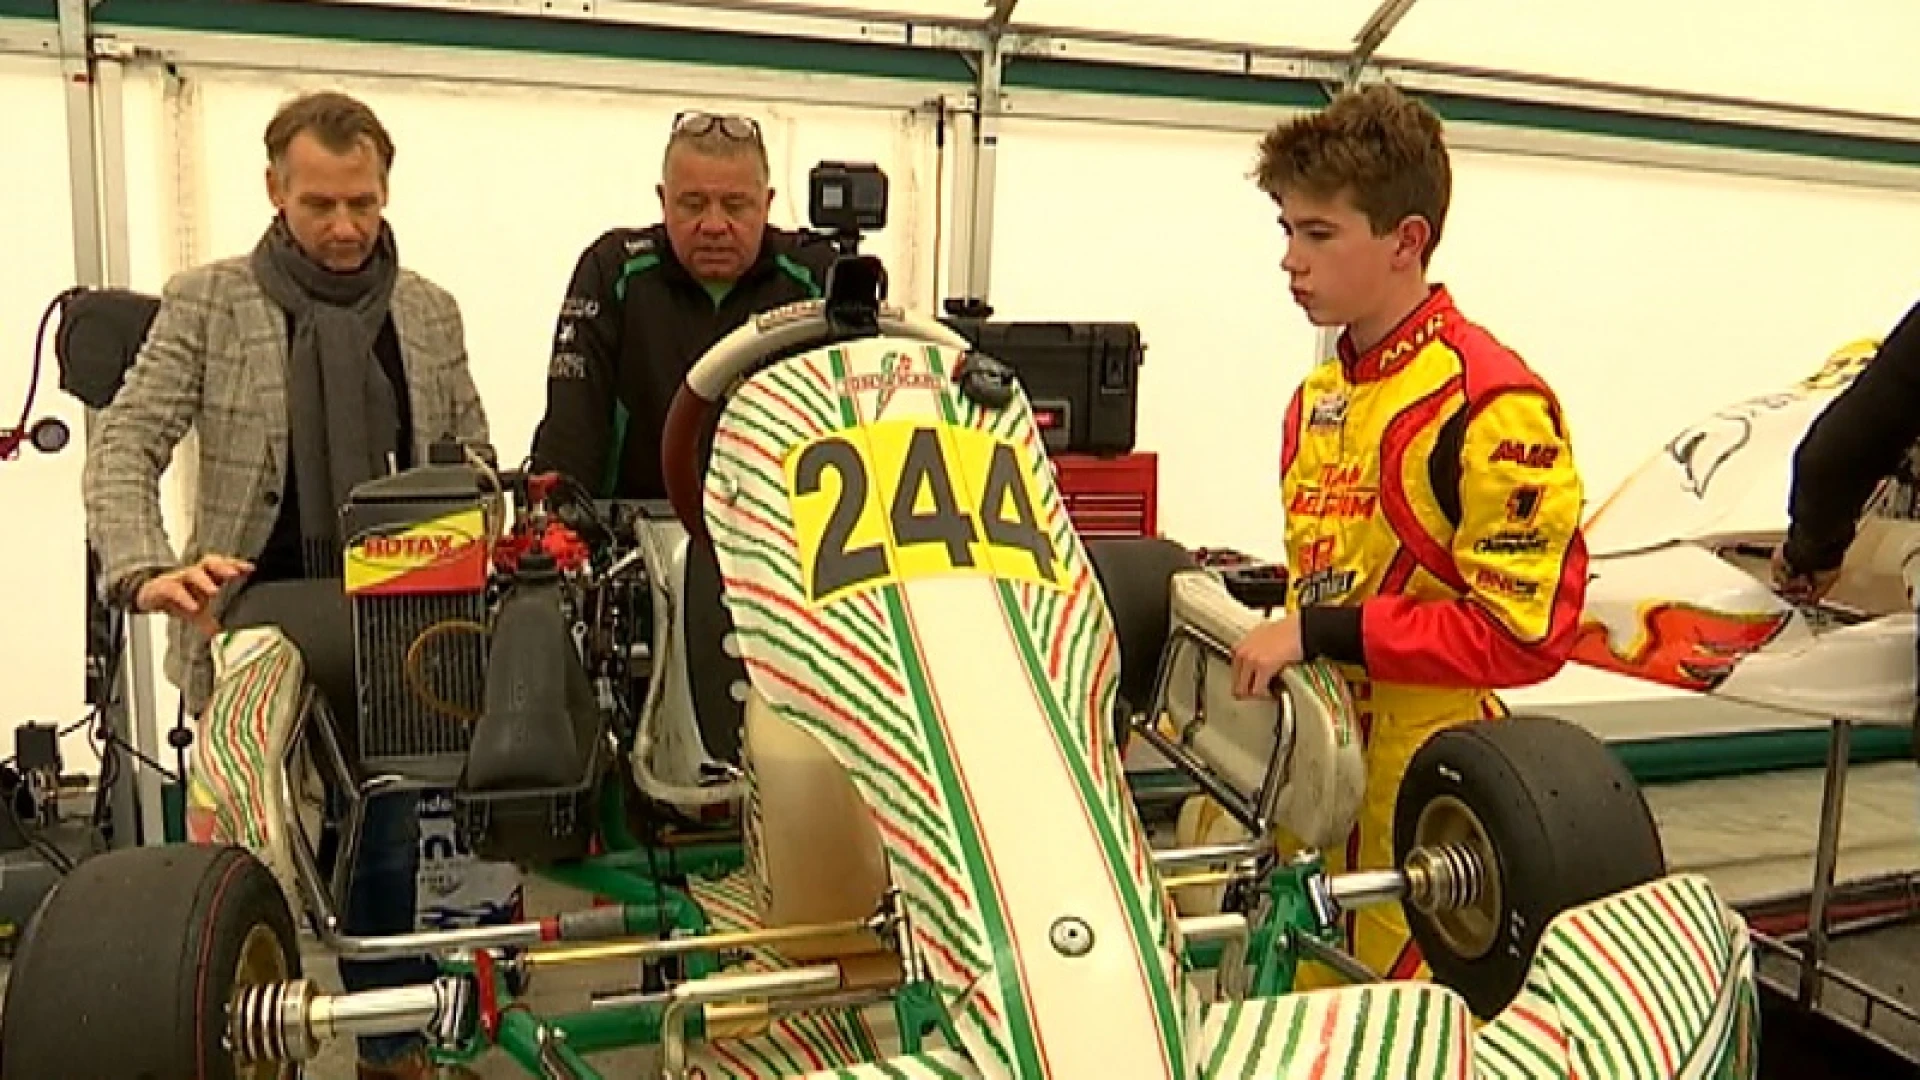 Milan (14) uit Oud-Heverlee is Belgisch kampioen karten: "Formule 1 is echt mijn grootste droom"